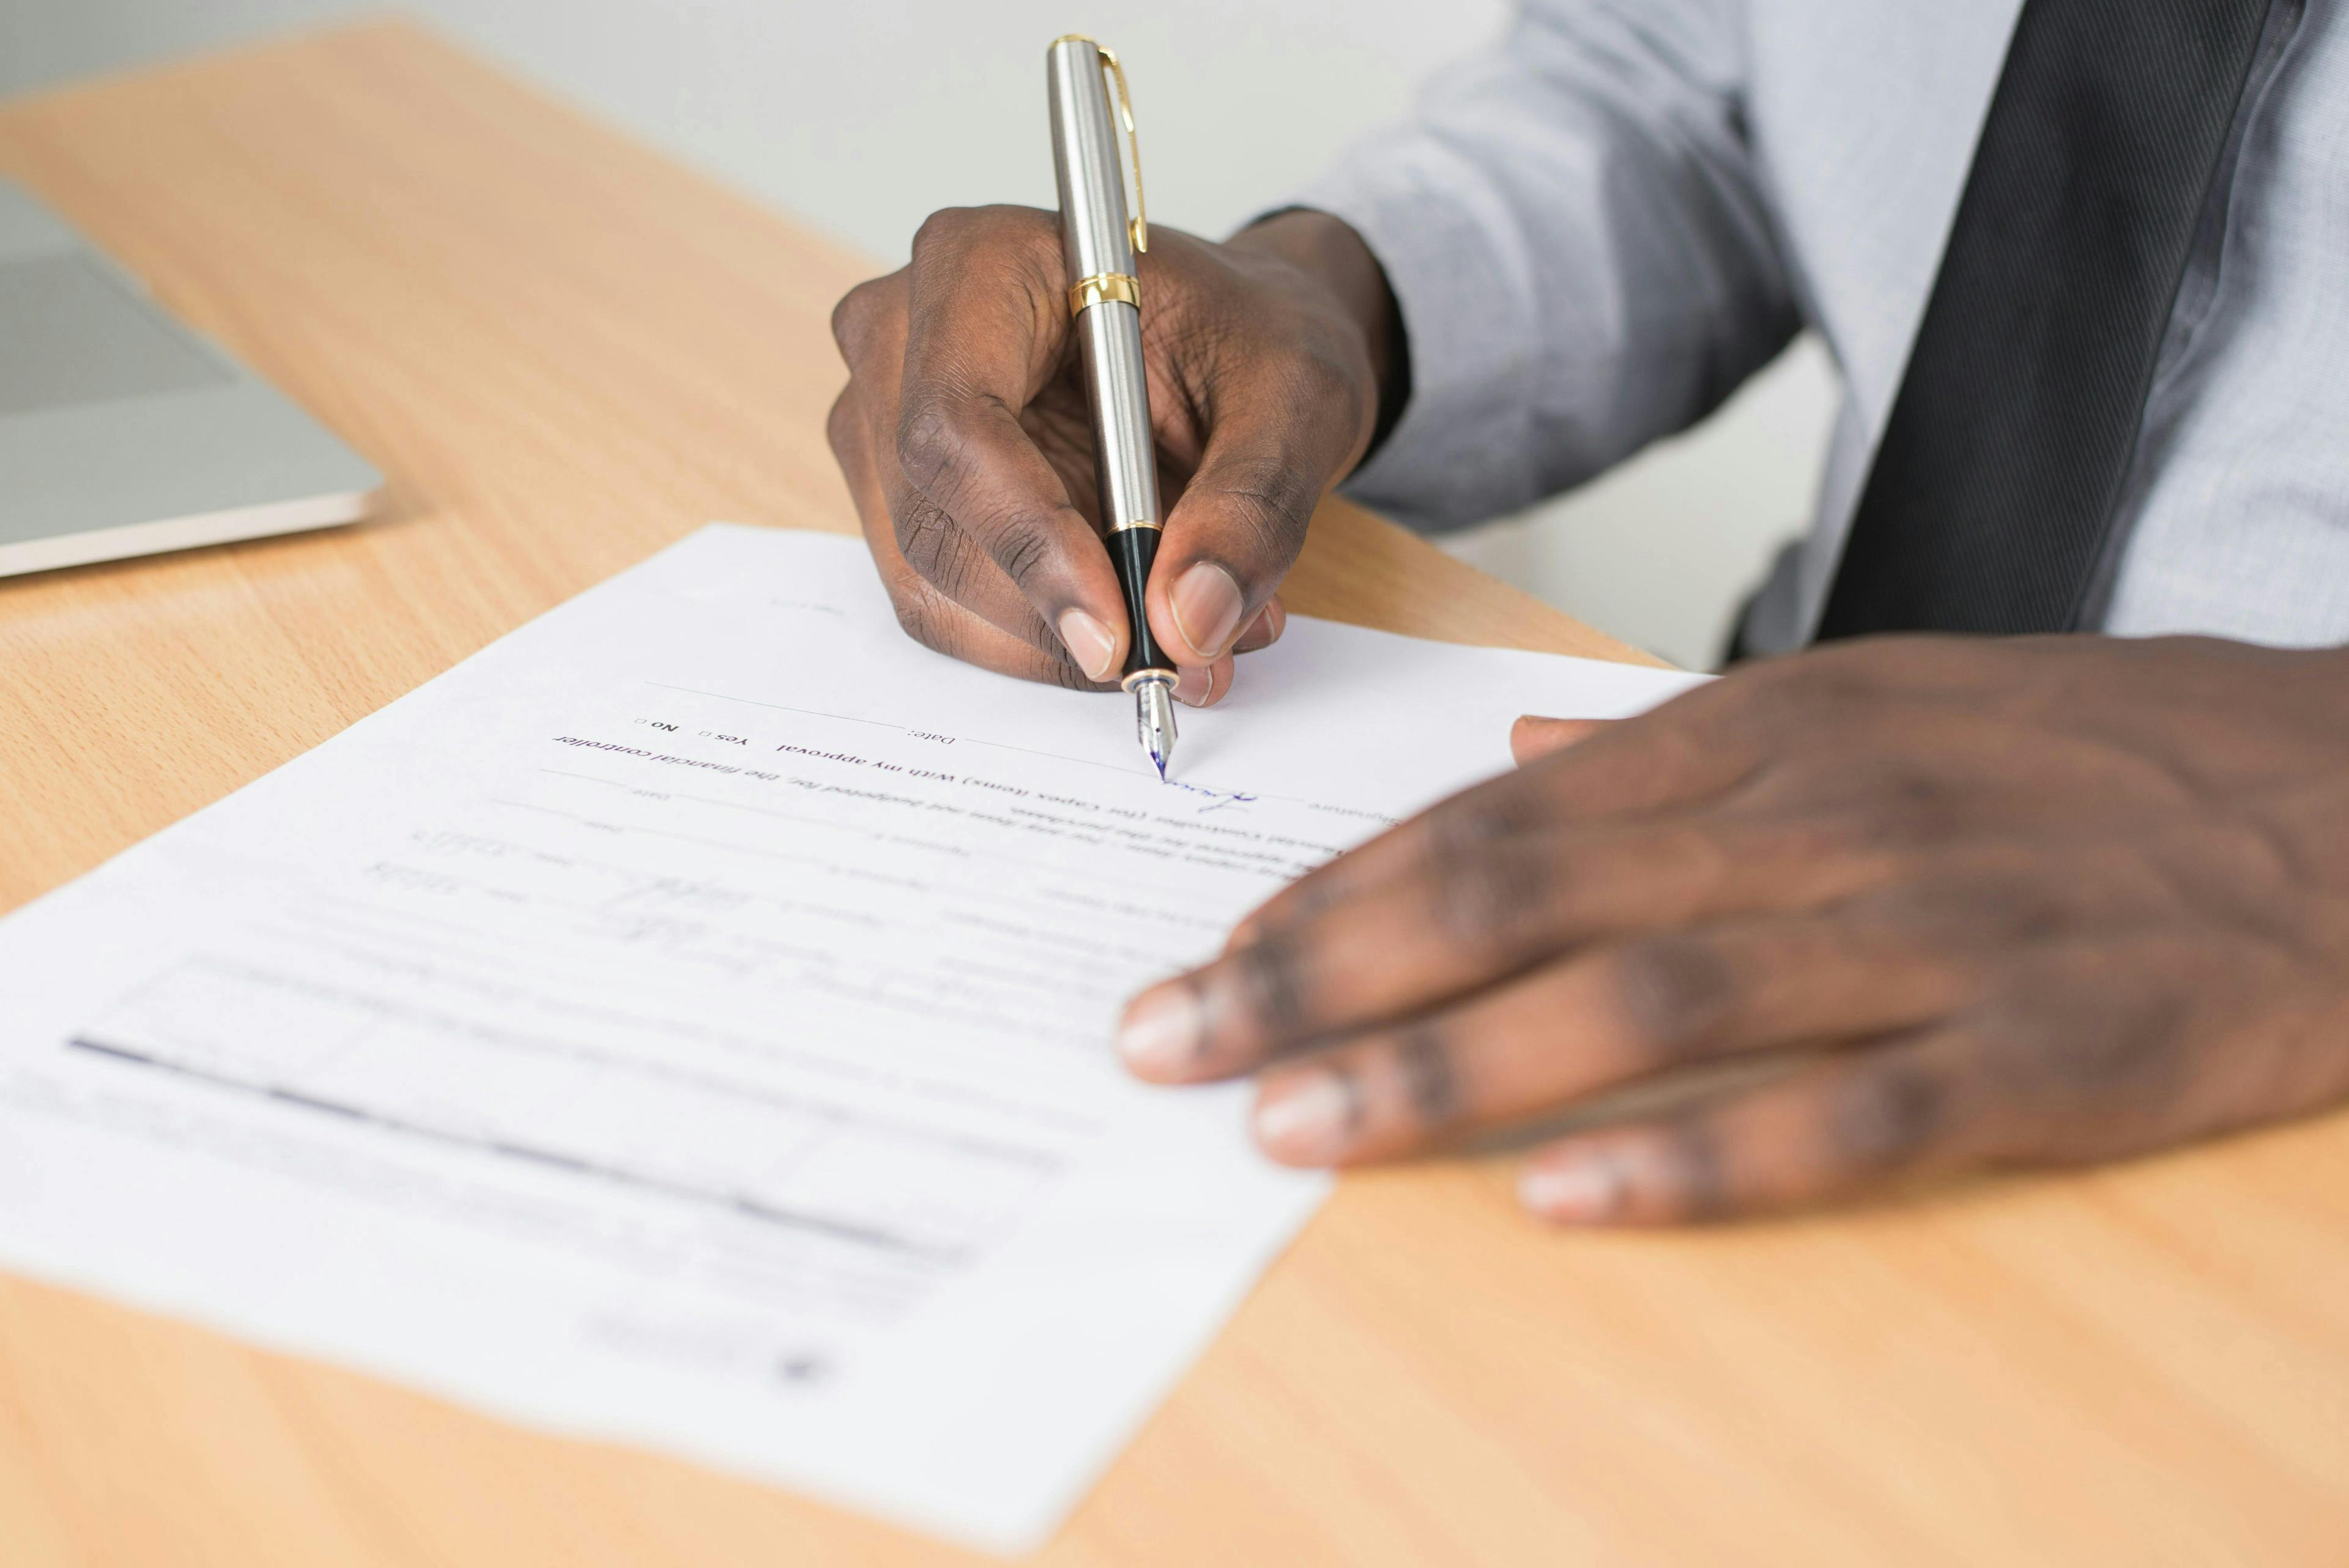 Uma imagem em close mostrando apenas as mãos de um homem assinando um formulário de inscrição.